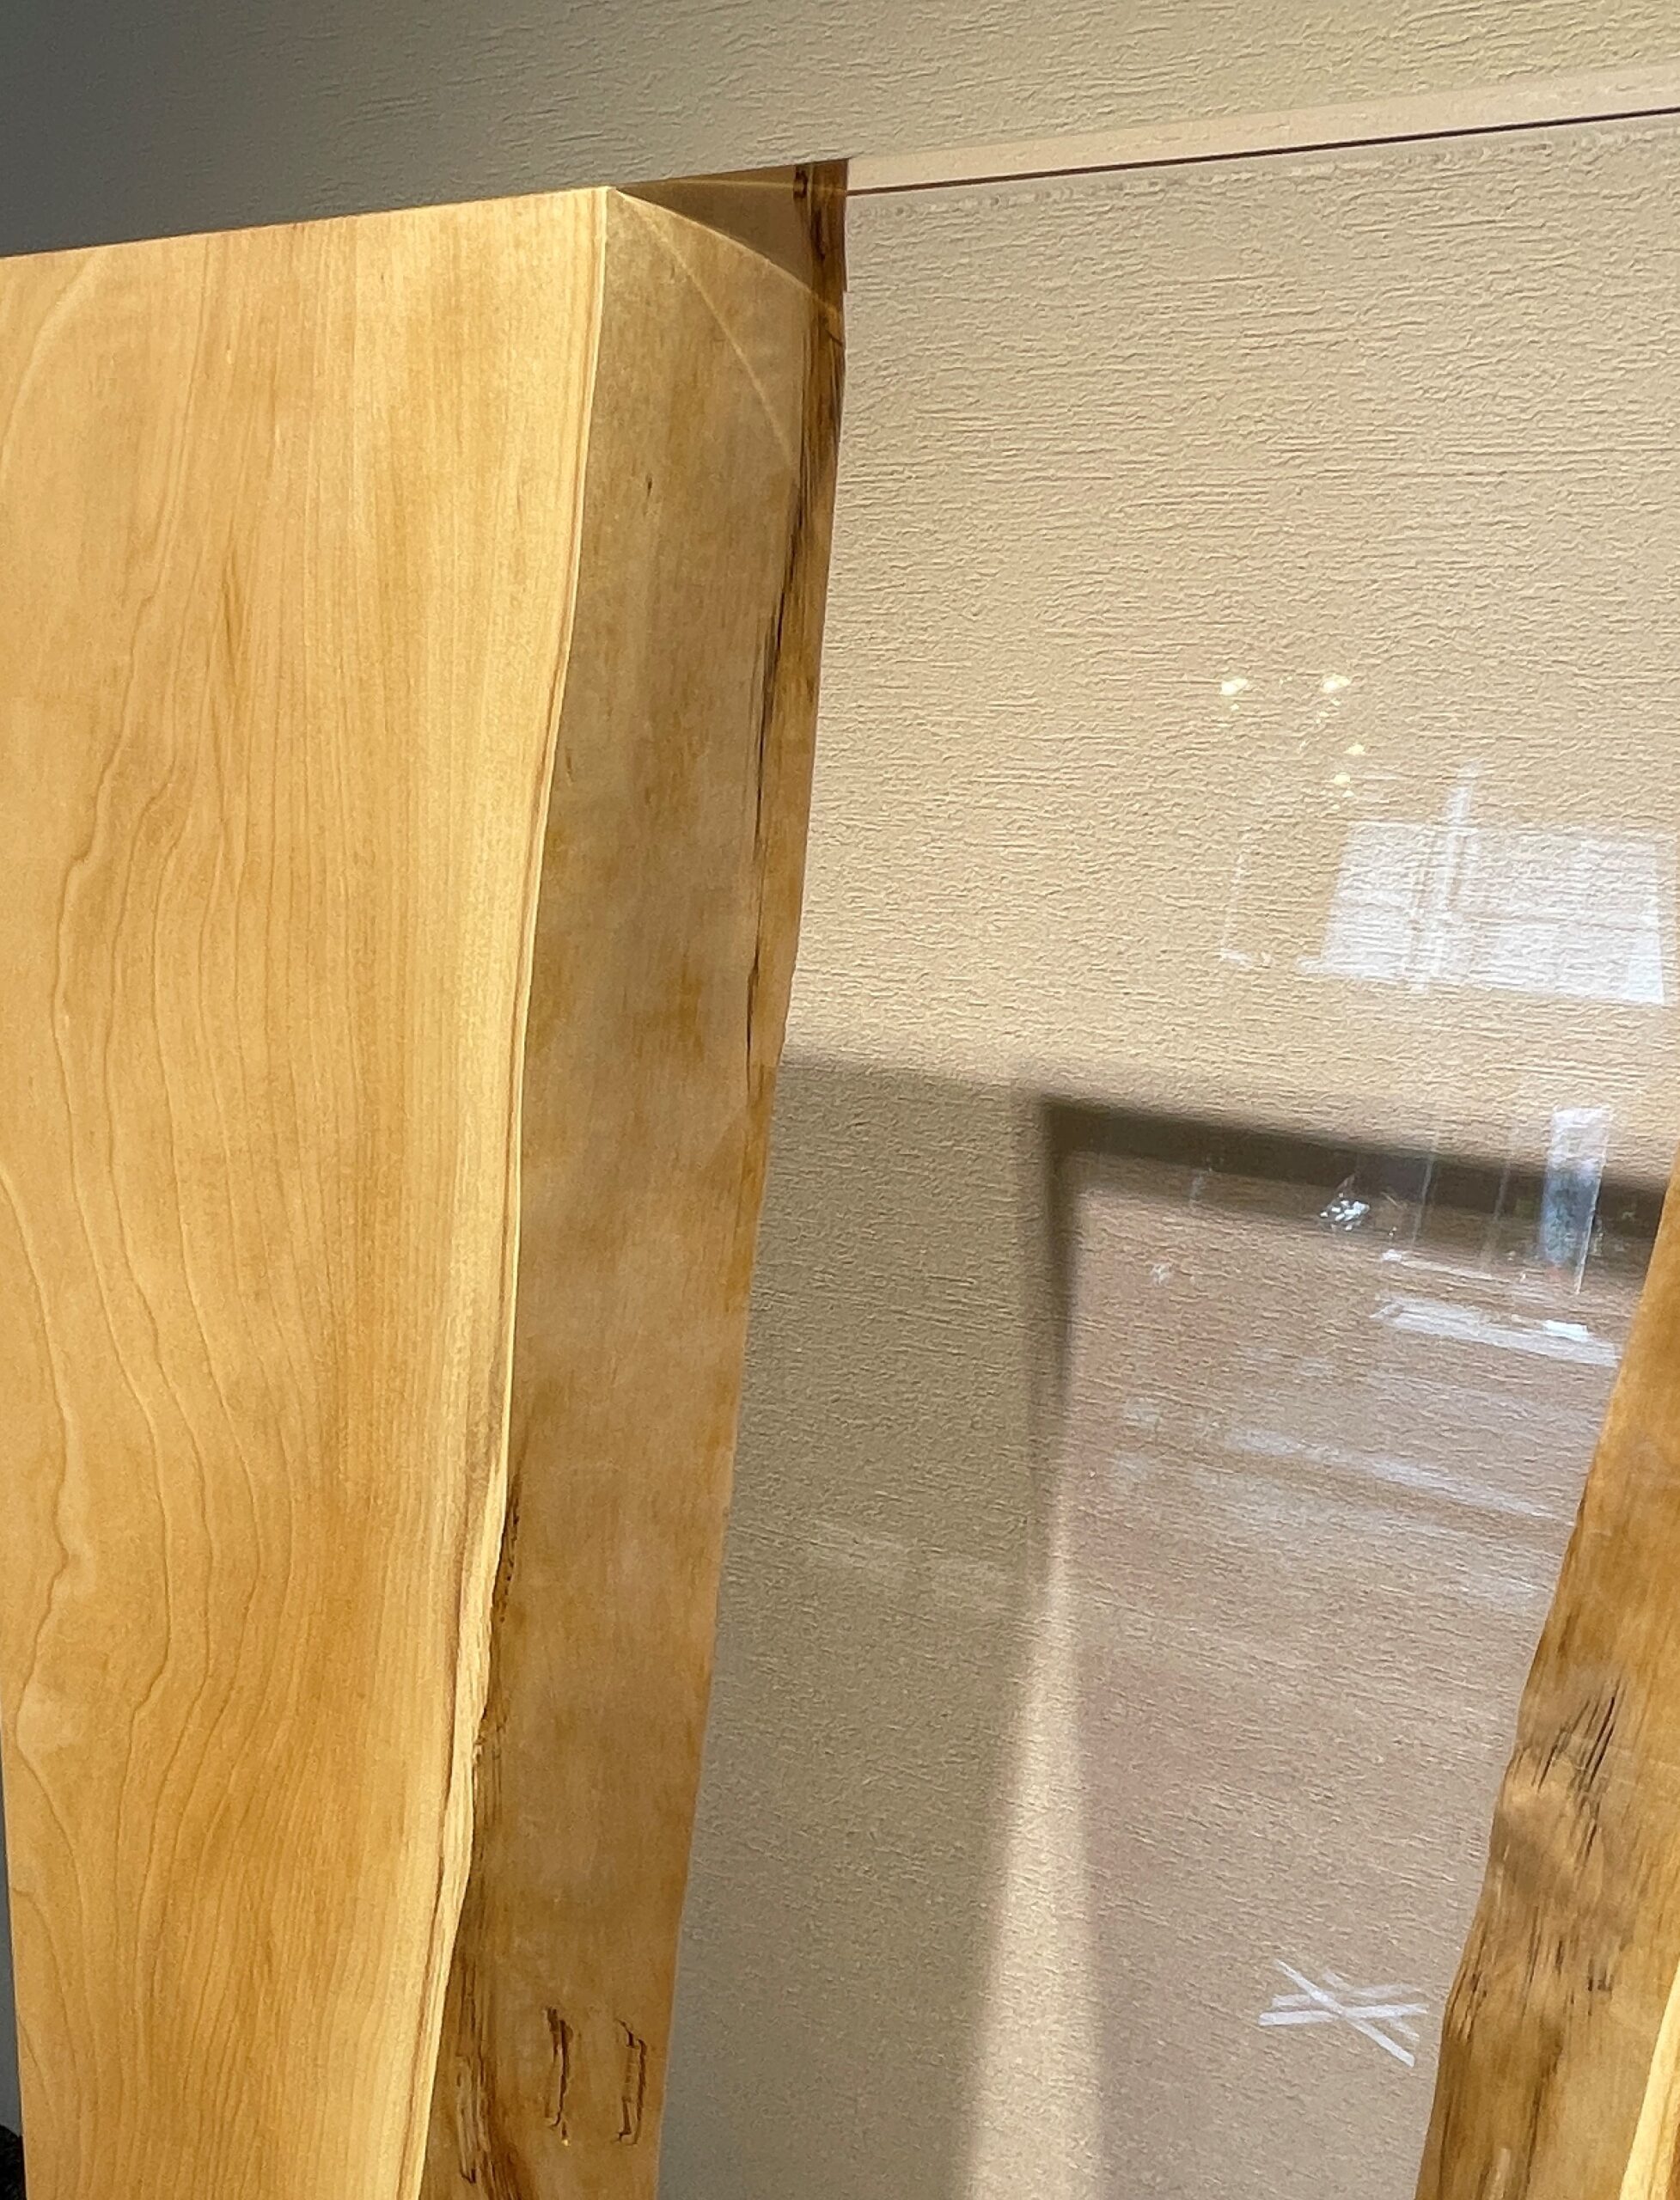 栃（トチ） | 天然木一枚板のレジンテーブル専門店MURUI｜天然木一枚板のレジンテーブル専門店 MURUI